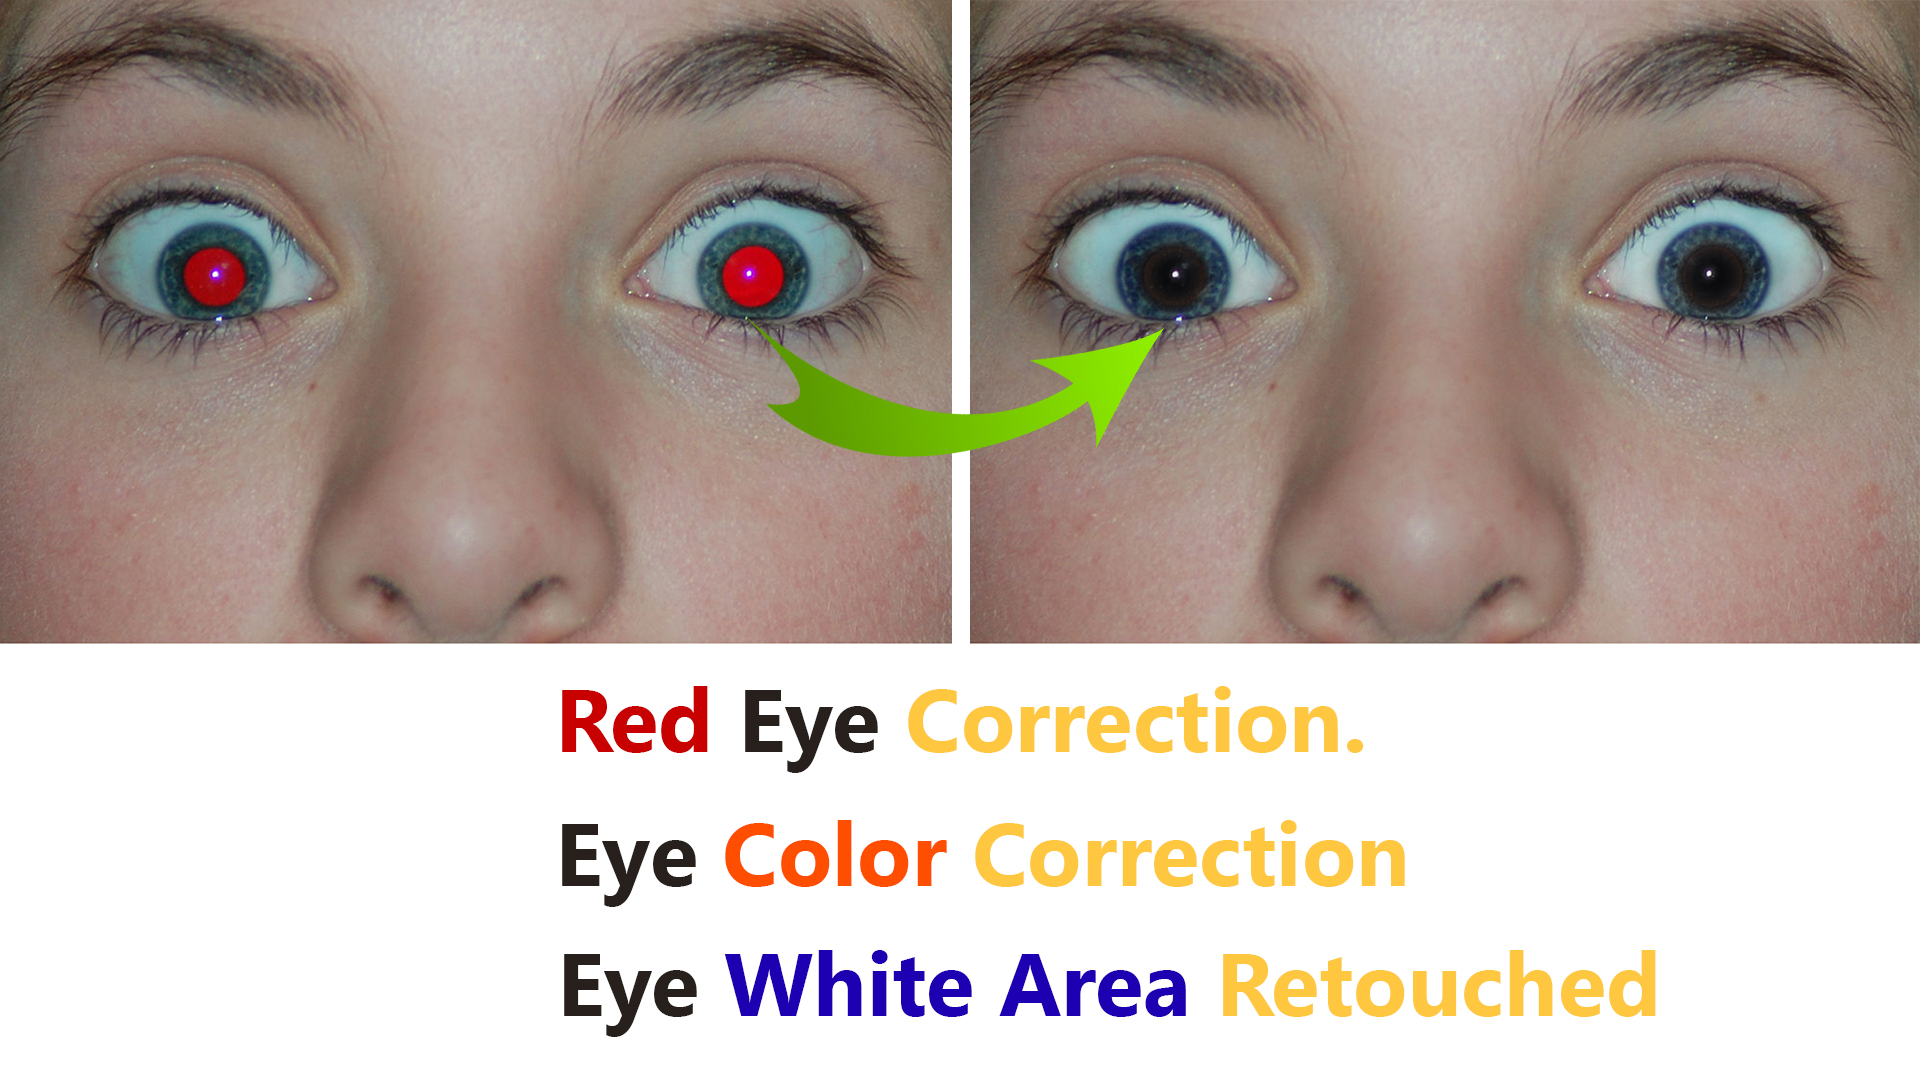 Eye color correction